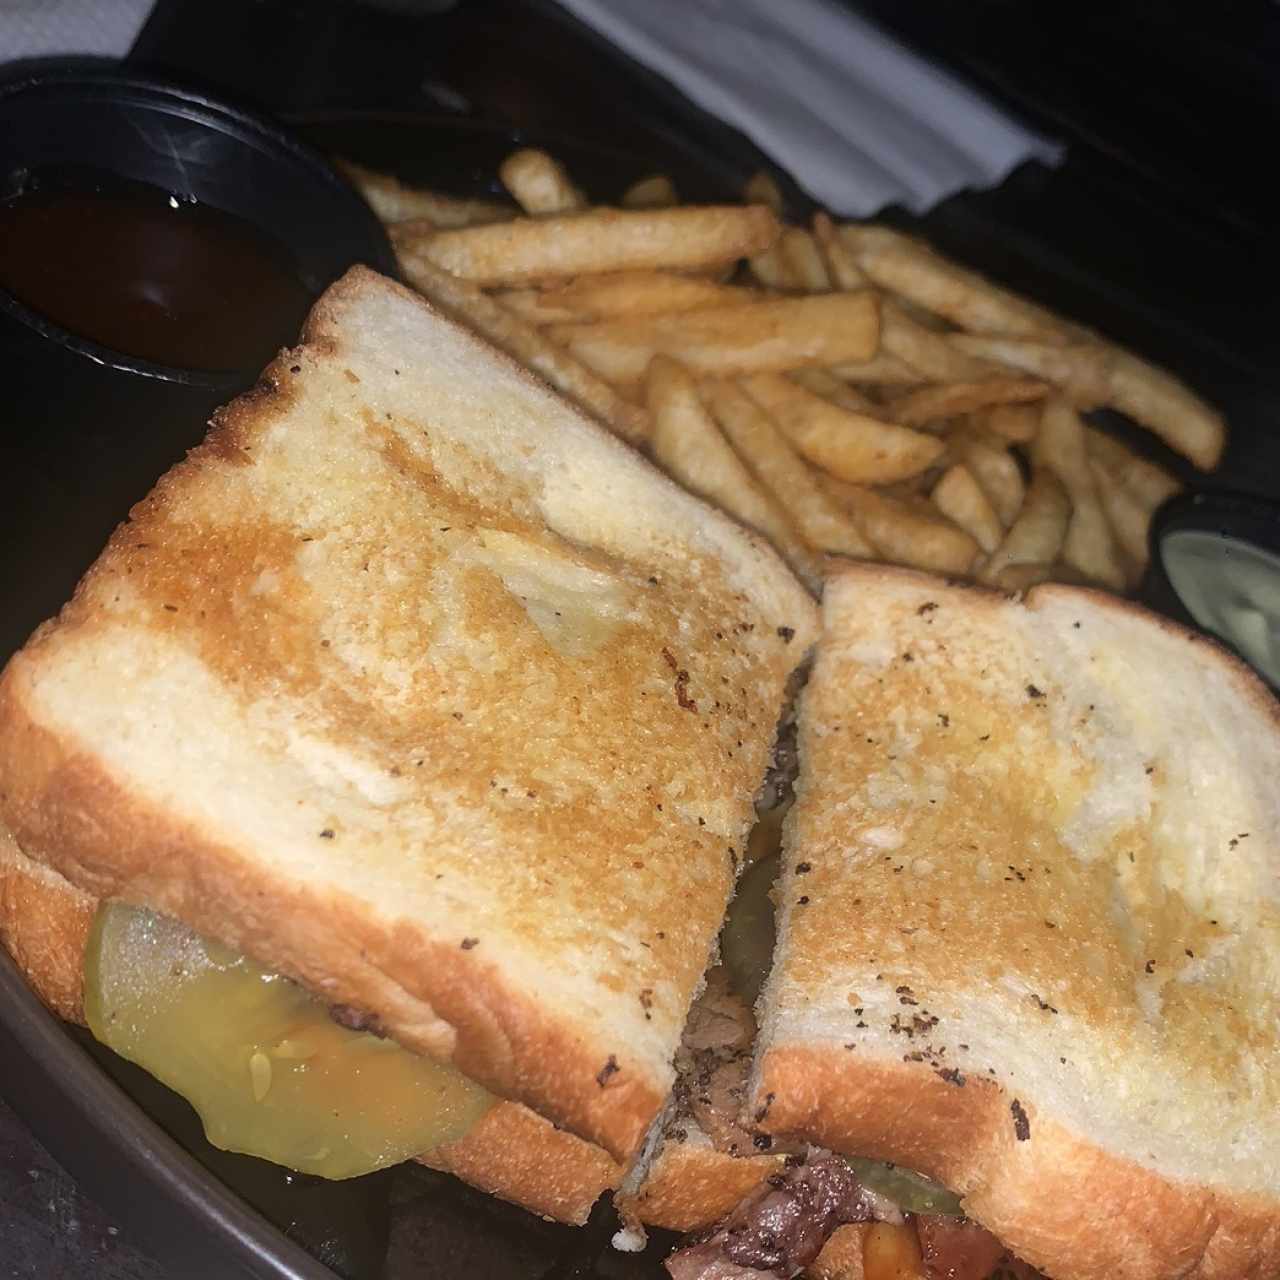 Texas Brisket Sandwich